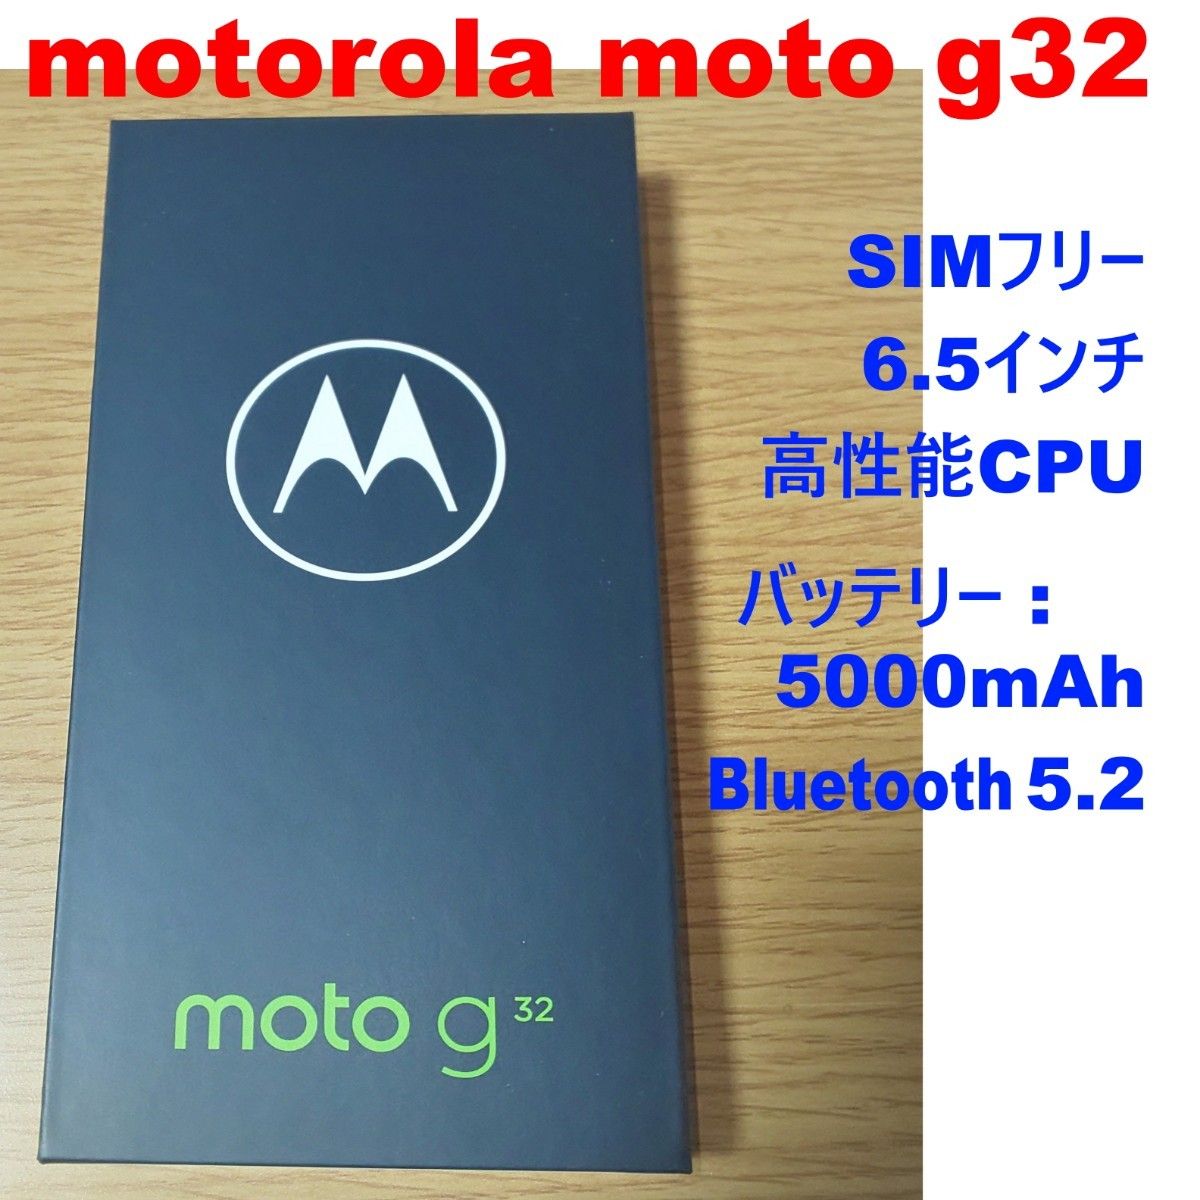 スマートフォン/携帯電話 スマートフォン本体 2020最新型 高品質 motorola moto g32 ミネラルグレイ SIMフリー 新品 